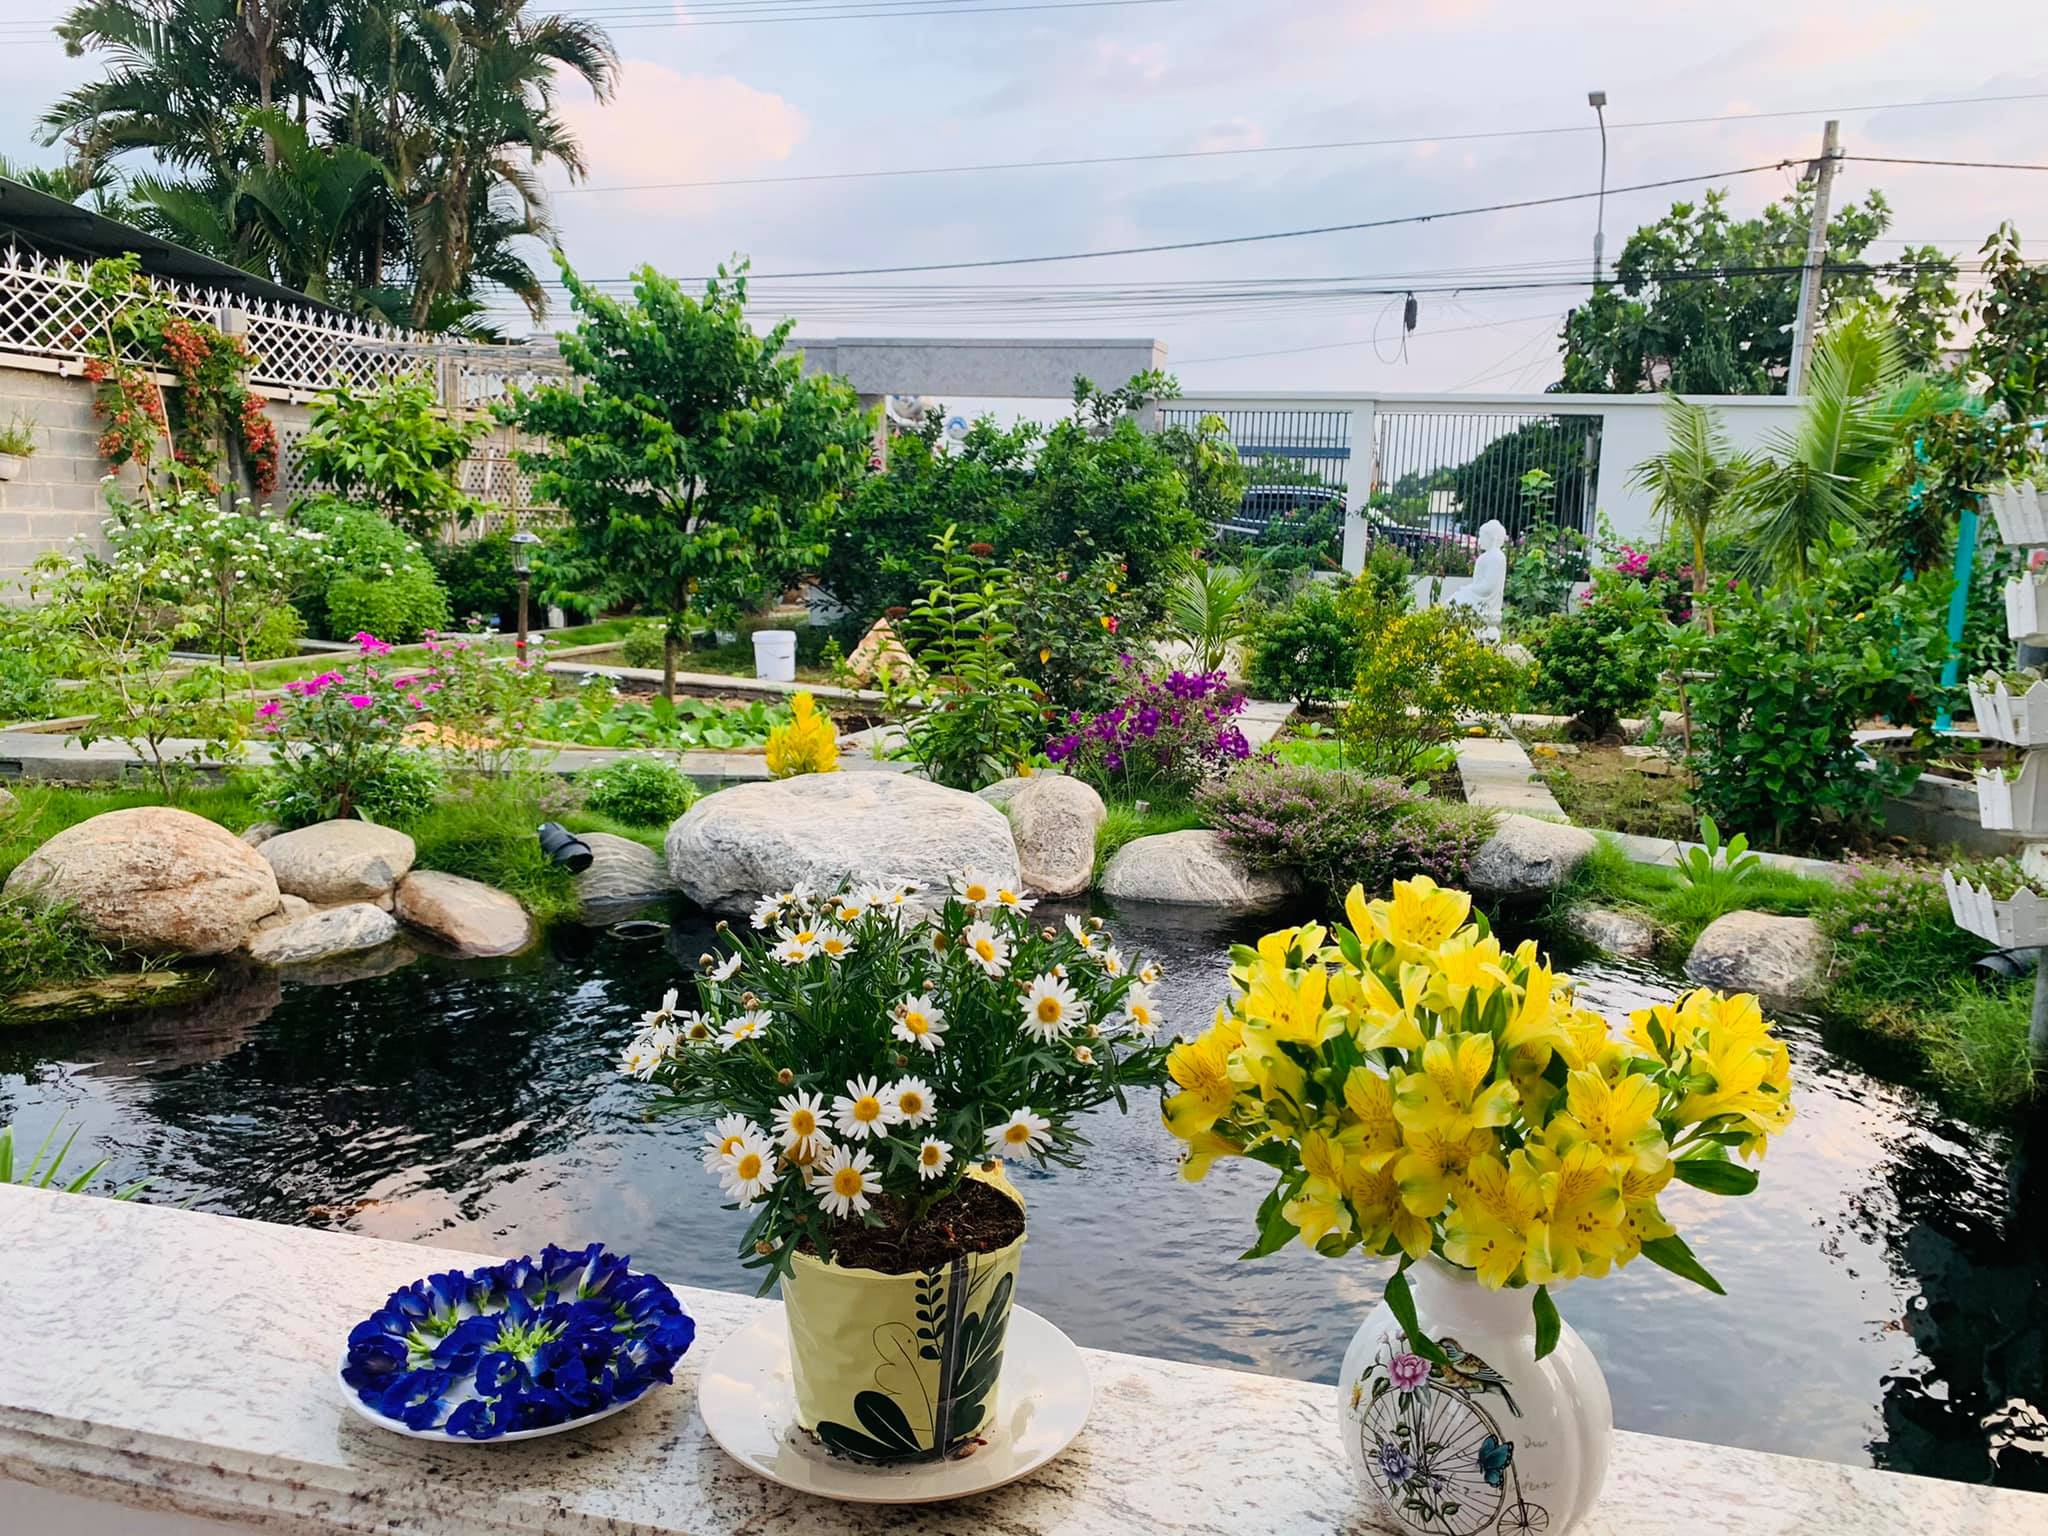 Khu vườn 720m2 đẹp như resort thu nhỏ người chồng tặng vợ ở Đồng Nai - 3